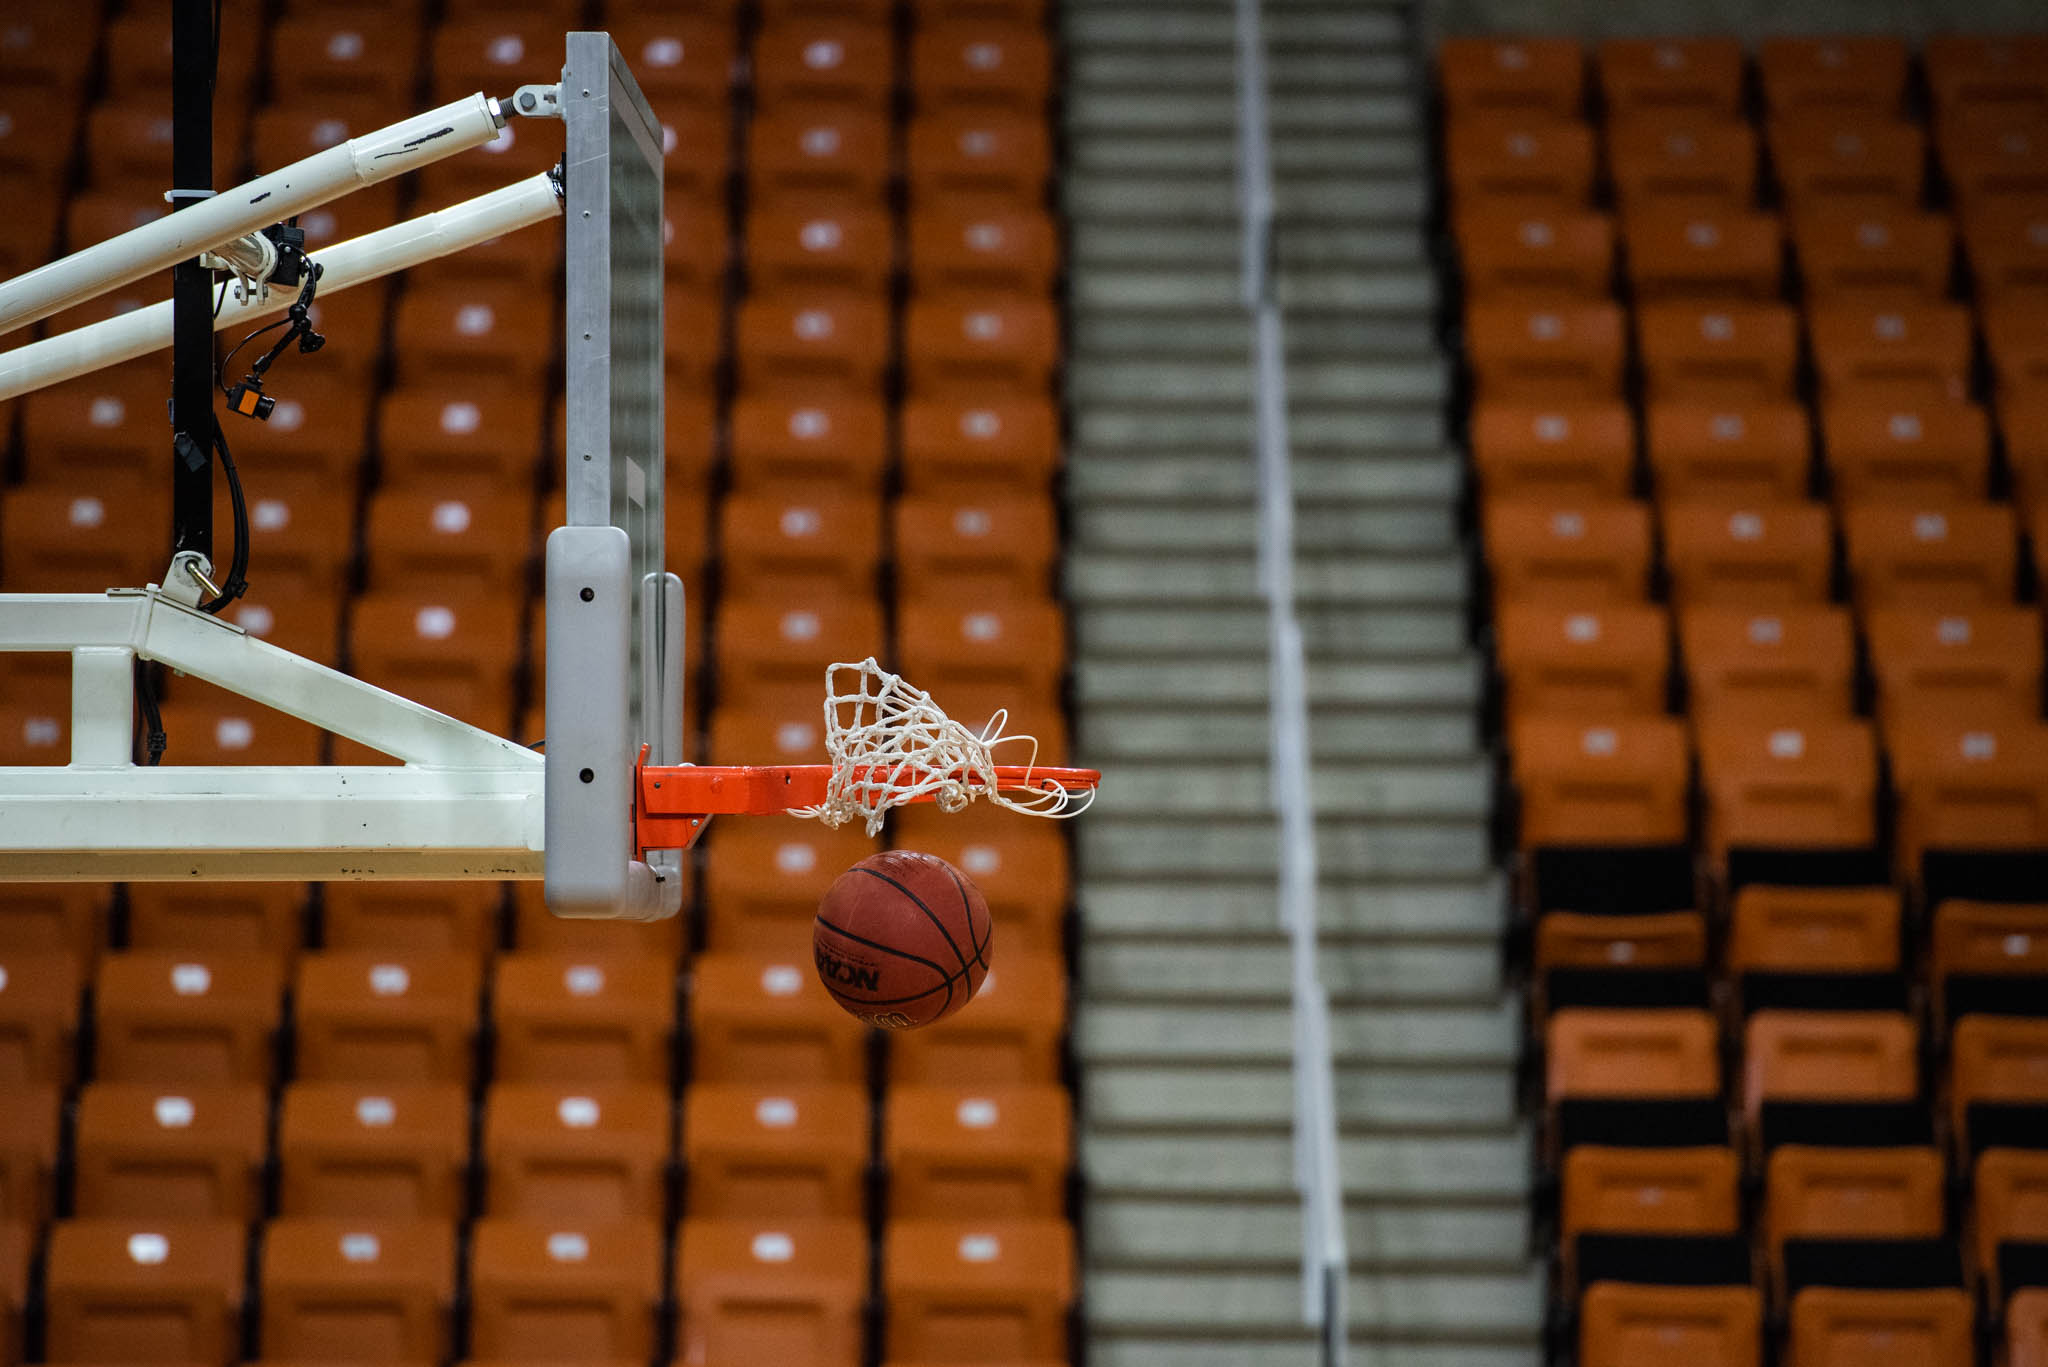 Basketball goes into hoop